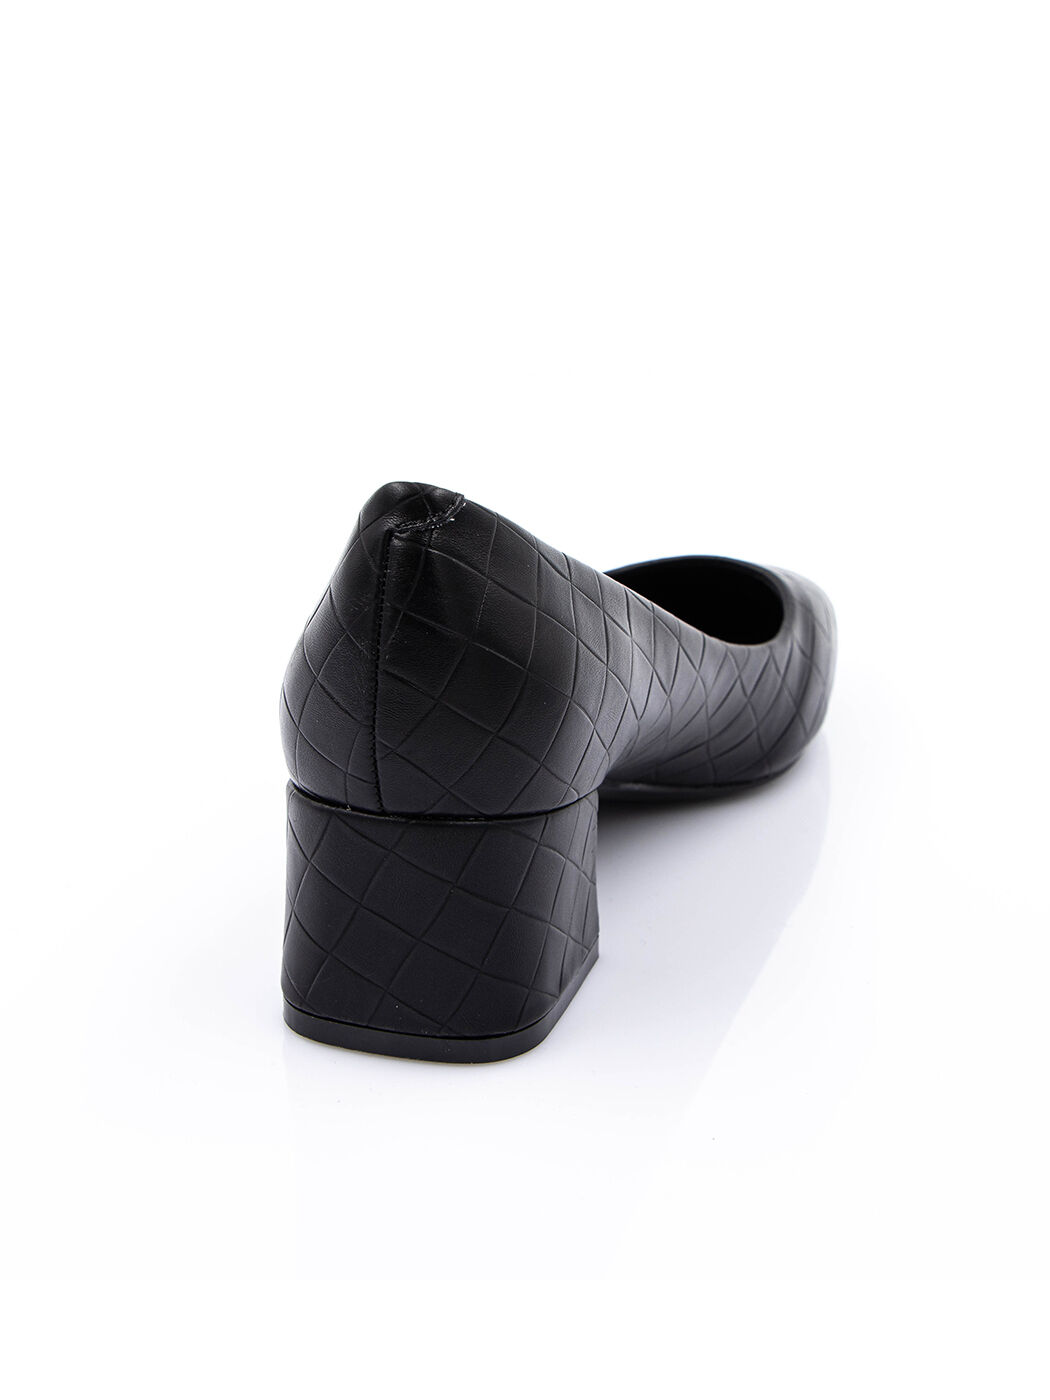 Туфли женские черные экокожа каблук устойчивый демисезон от производителя EM вид 0